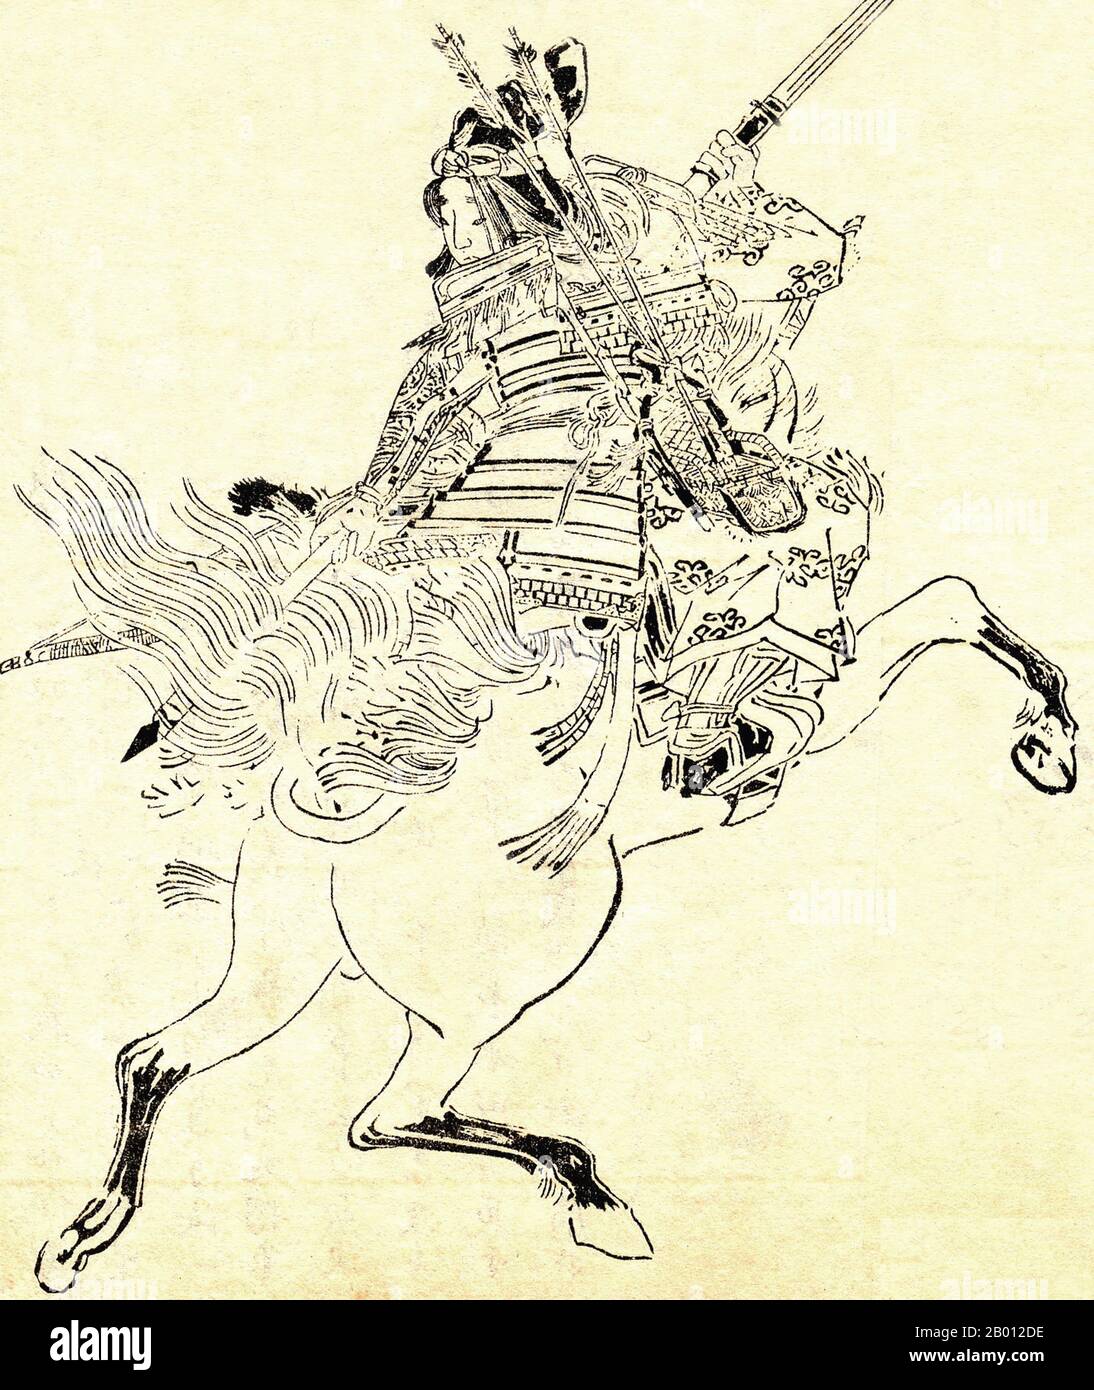 Japan: Tomoe Gozen (1157-1247), eine weibliche Samurai oder onna-musha, die für ihre tadelige und starke Kraft bekannt ist. Zeichnung von Kikuchi Yosai (1781-1878), 19. Jahrhundert. Nach einem historischen Bericht: "Tomoe war besonders schön, mit weißer Haut, langen Haaren und charmanten Merkmalen. Sie war auch eine bemerkenswert starke Bogenschützin, und als Schwertkämpferin war sie ein Krieger im Wert von tausend, bereit, sich einem Dämon oder einem gott zu stellen, bestiegen oder zu Fuß. Sie behandelte ungebrochene Pferde mit hervorragenden Fähigkeiten; sie ritt unversehrt gefährliche Abfahrten hinunter. Wann immer ein Kampf bevorstand, schickte Yoshinaka sie als seinen ersten Kapitän hinaus...“ Stockfoto